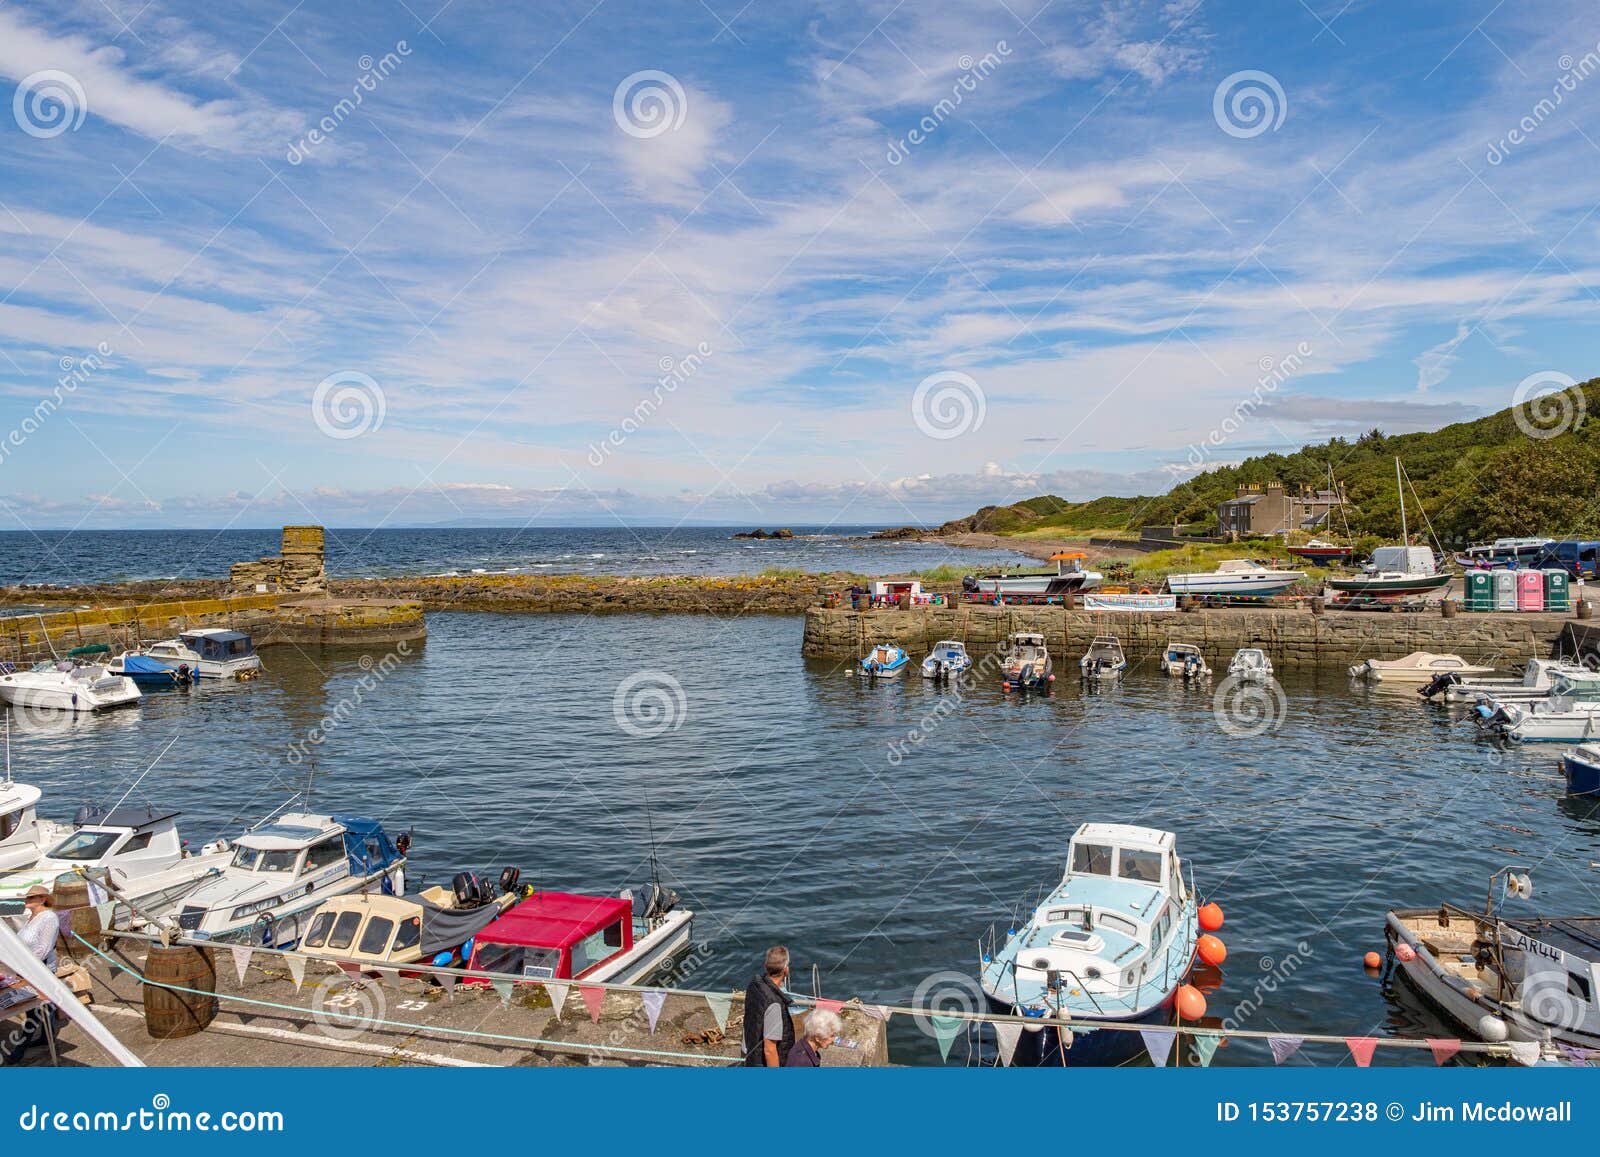 Dunure在苏格兰外国人摄制地点有海营业日的节日和繁忙与许多访客对这普遍编辑类库存照片 图片包括有dunure在苏格兰外国人摄制地点有海营业日的节日和繁忙与许多访客对这普遍